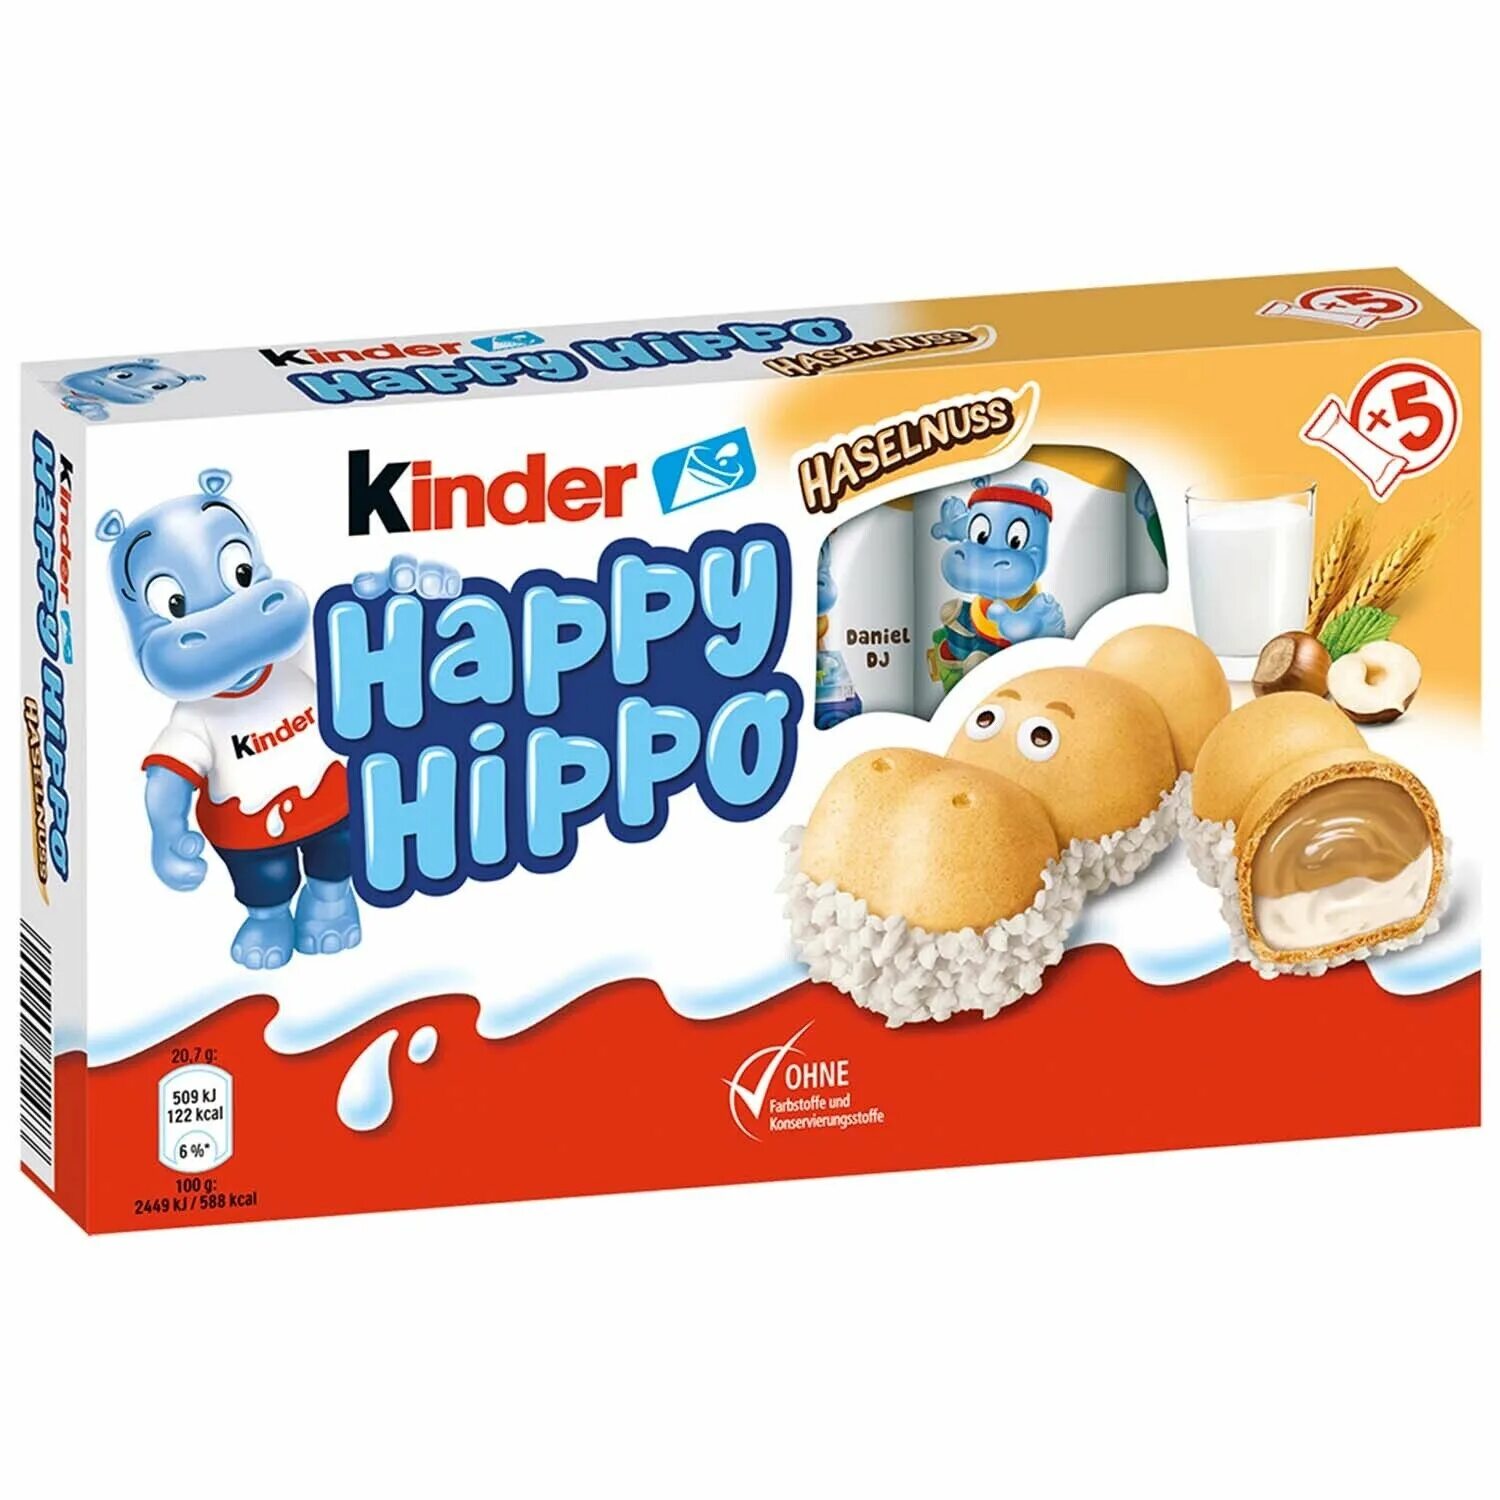 Kinder hippo